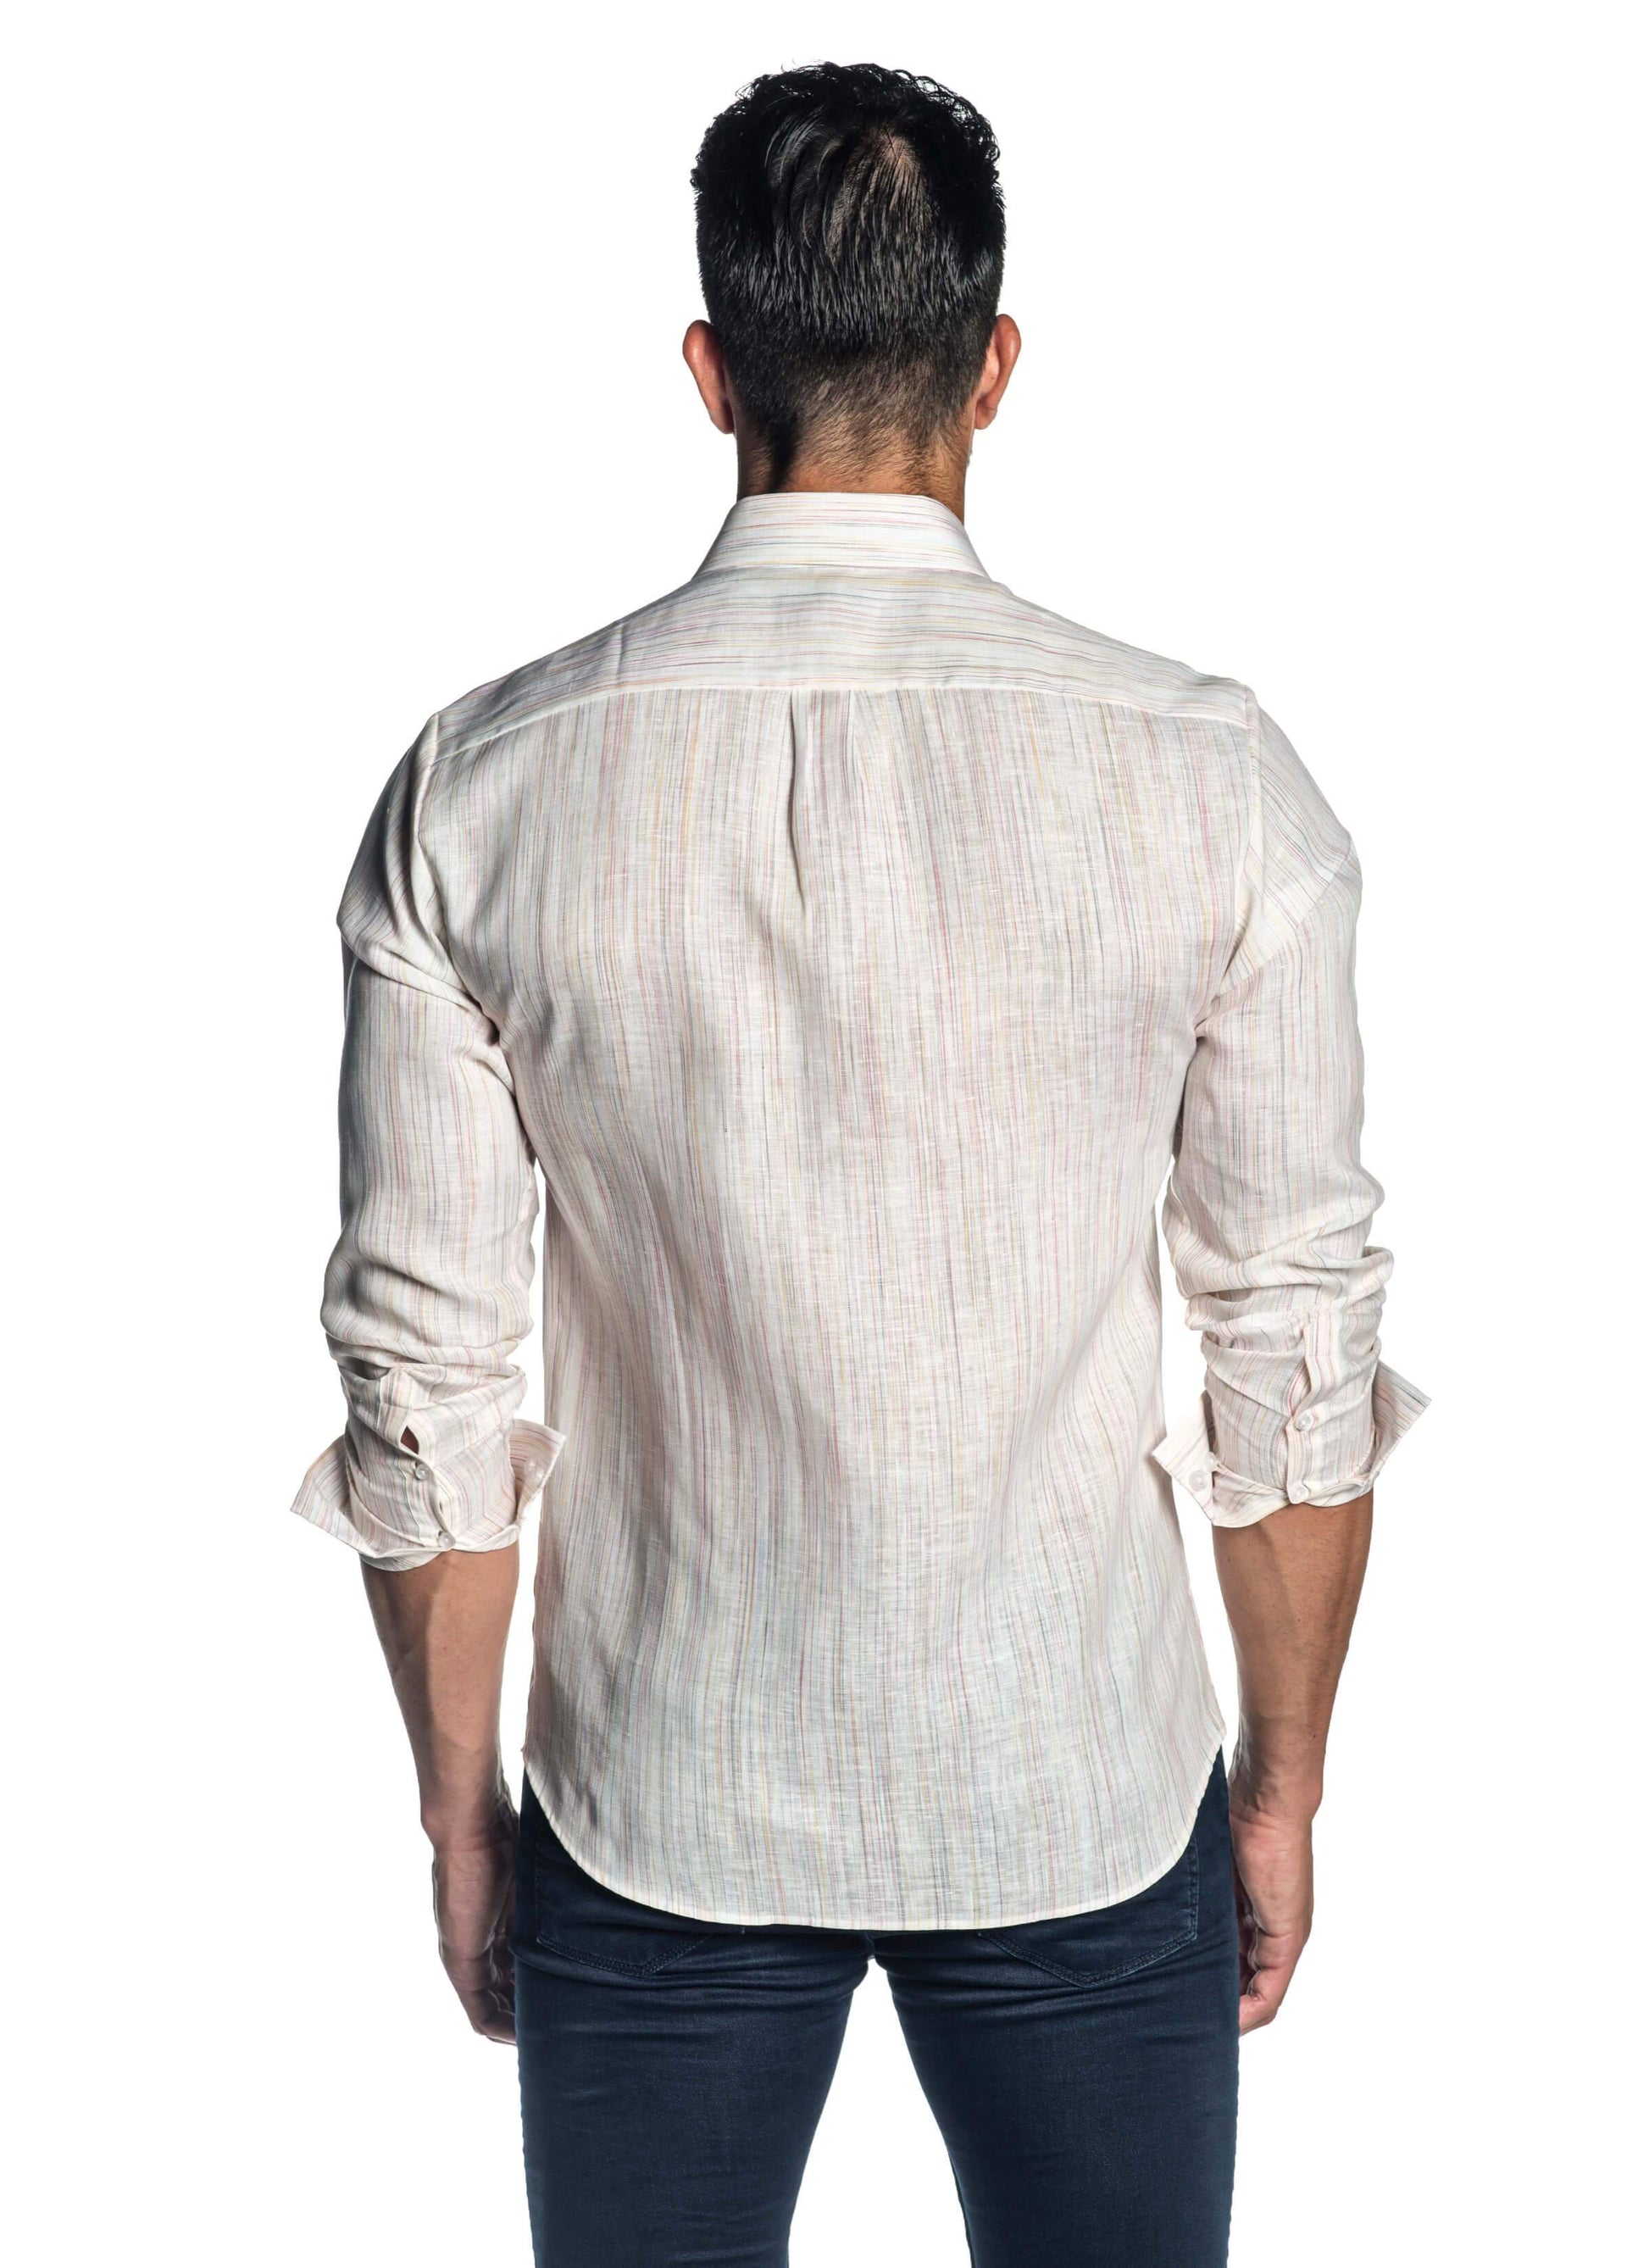 White Melange Shirt for Men AH-ITA-T-9015 - Back - Jared Lang